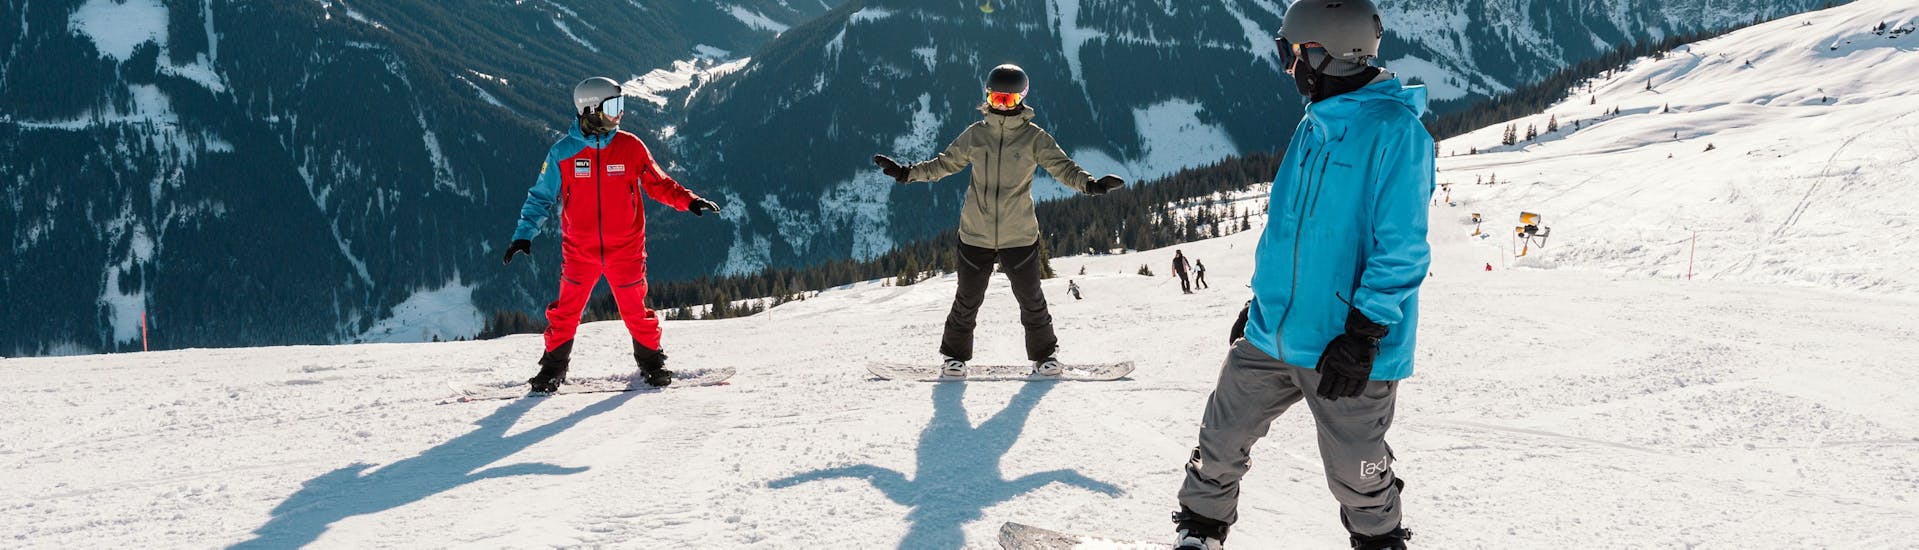 Cours particulier de ski Adultes (dès 15 ans) pour Tous niveaux.